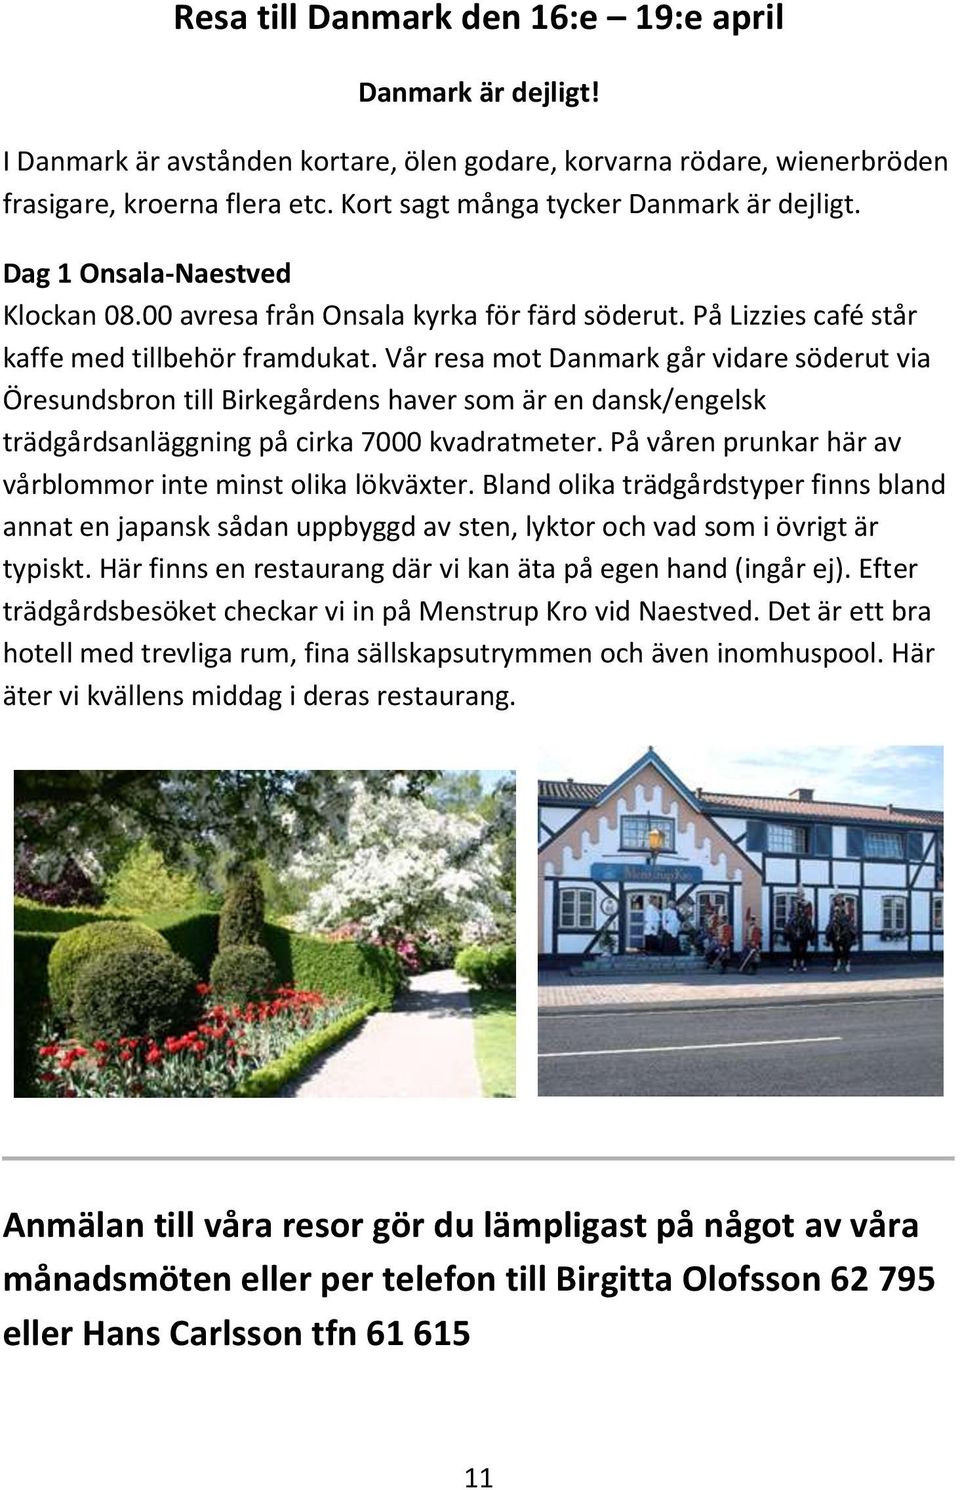 Vår resa mot Danmark går vidare söderut via Öresundsbron till Birkegårdens haver som är en dansk/engelsk trädgårdsanläggning på cirka 7000 kvadratmeter.